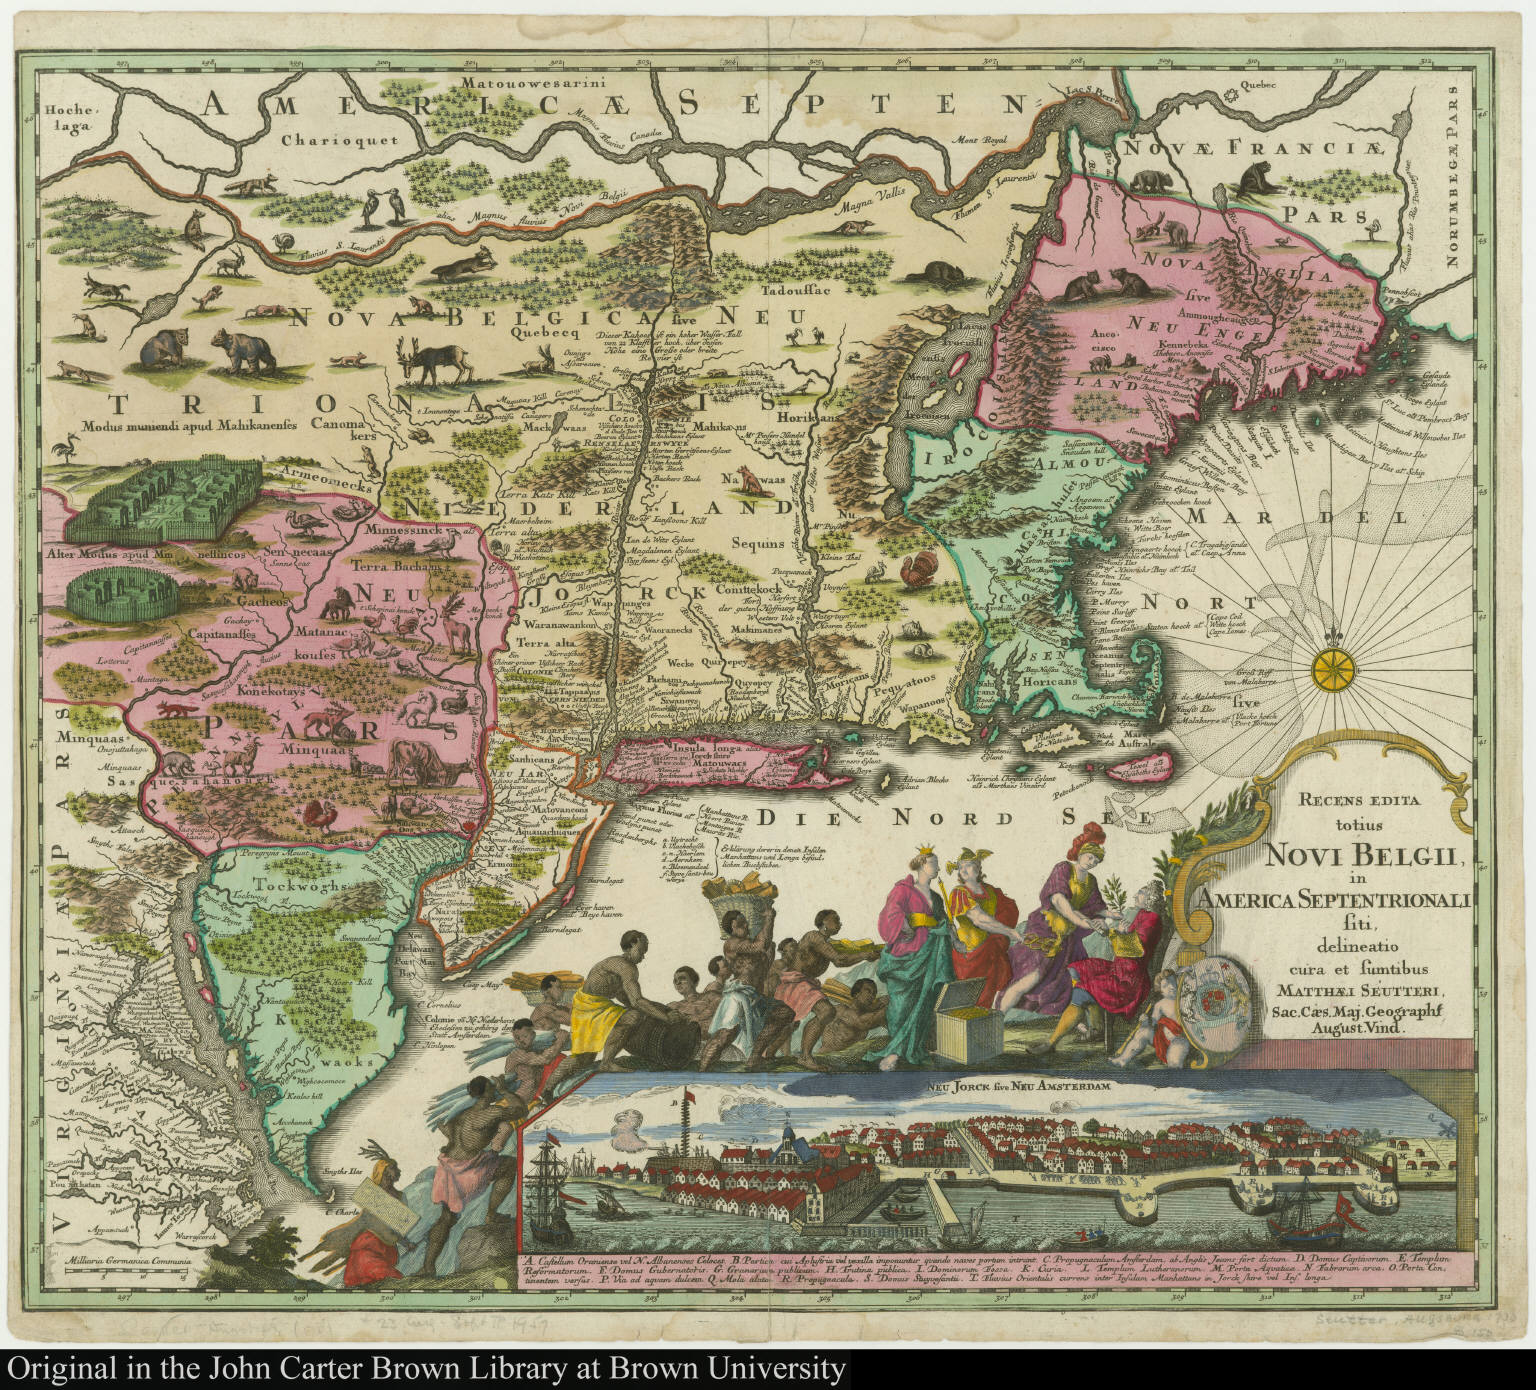 Recens edita totius Novi Belgii in America Septentrionali siti (1730)